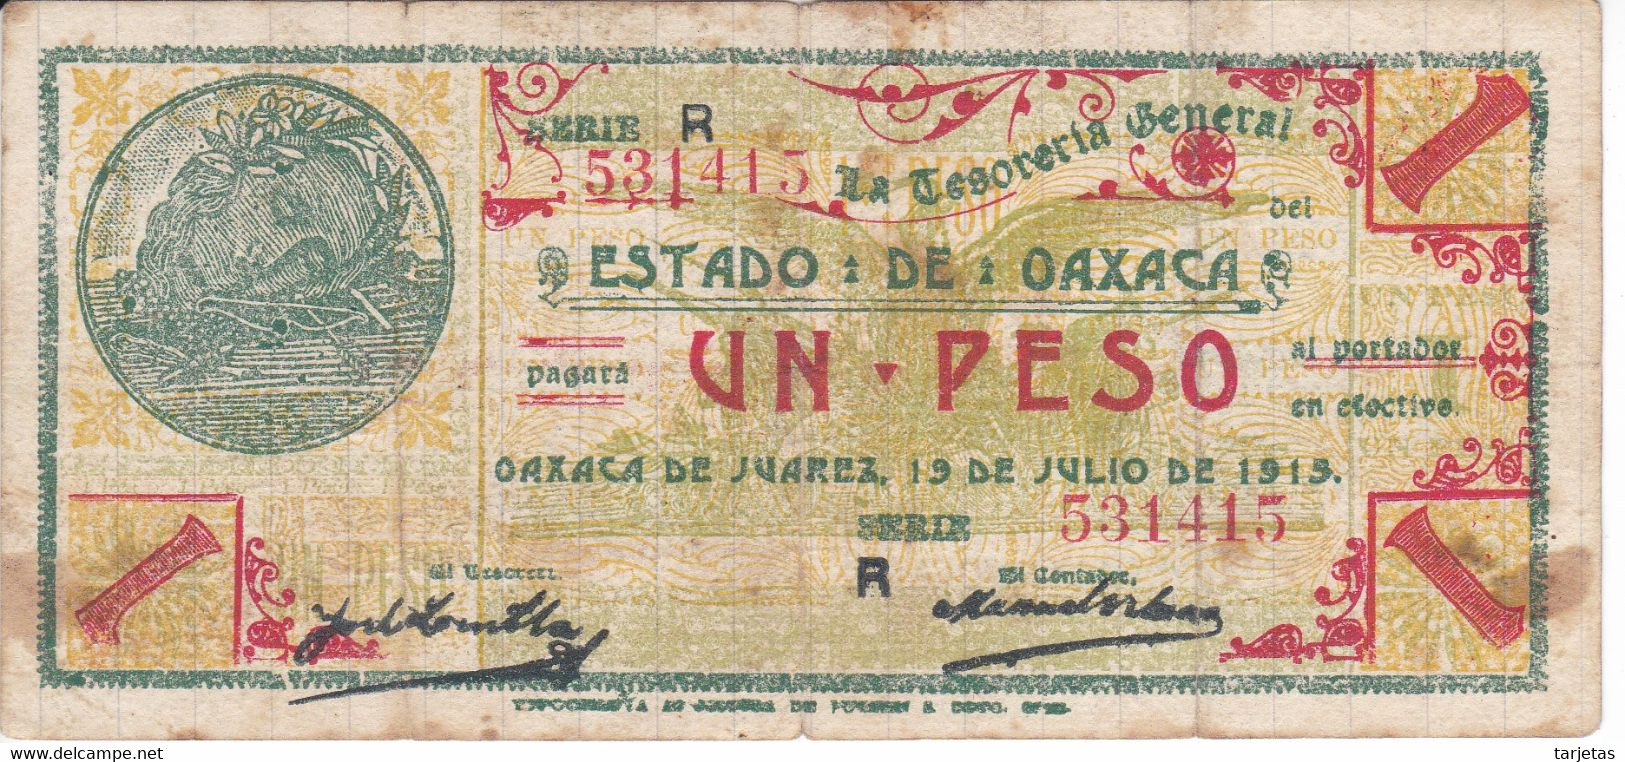 BILLETE DE MEXICO DE 1 PESO DEL ESTADO DE OAXACA DEL 19 DE JULIO DE 1915   (BANKNOTE) RARO - Mexico